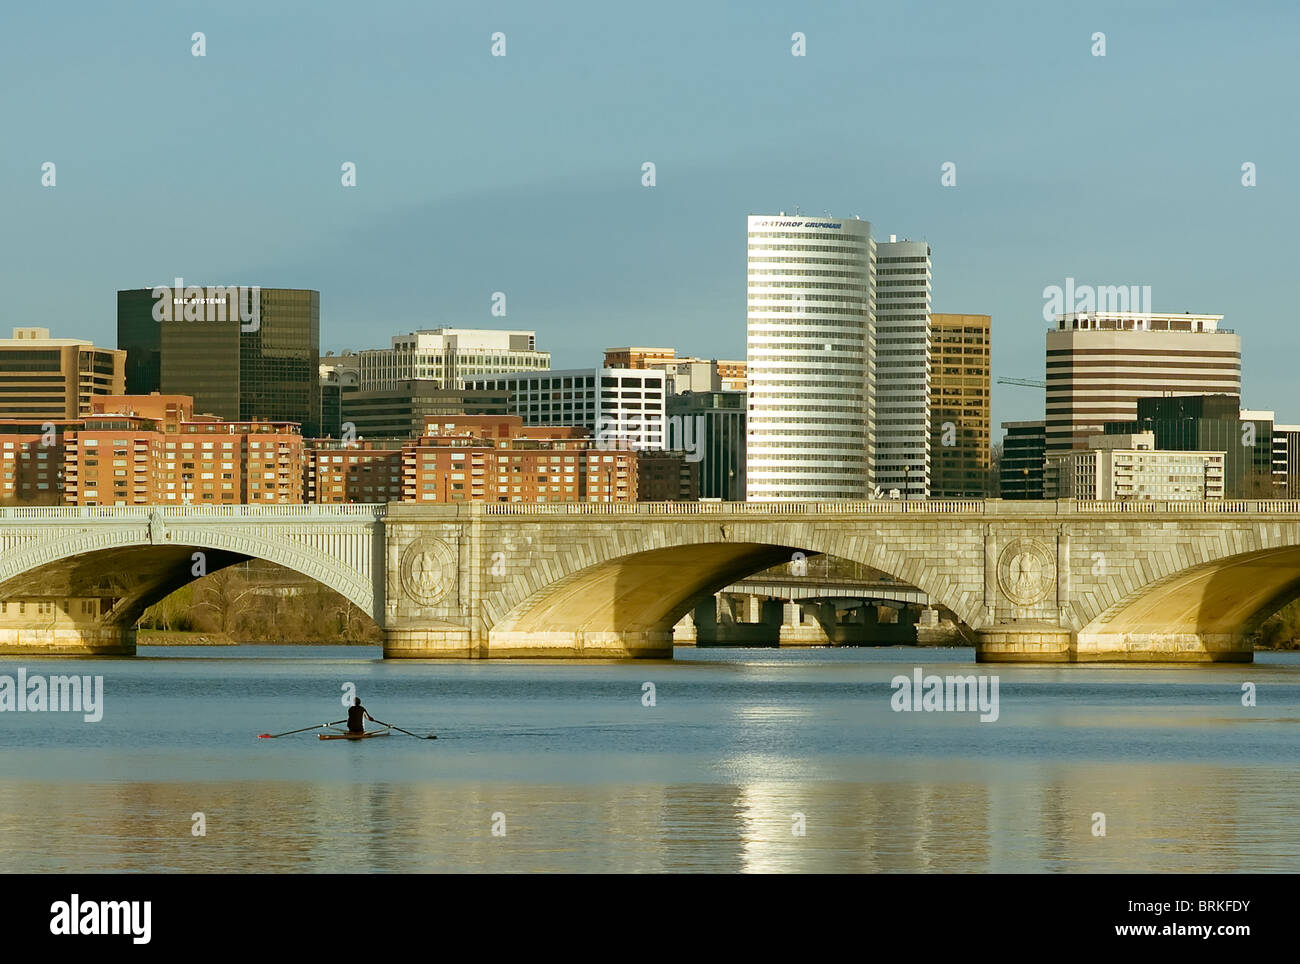 Un seul rameur matin remonte la rivière Potomac, à partir de l'Arlington Memorial Bridge, avec des bâtiments de Arlington, VA dans l'arrière-plan. Banque D'Images